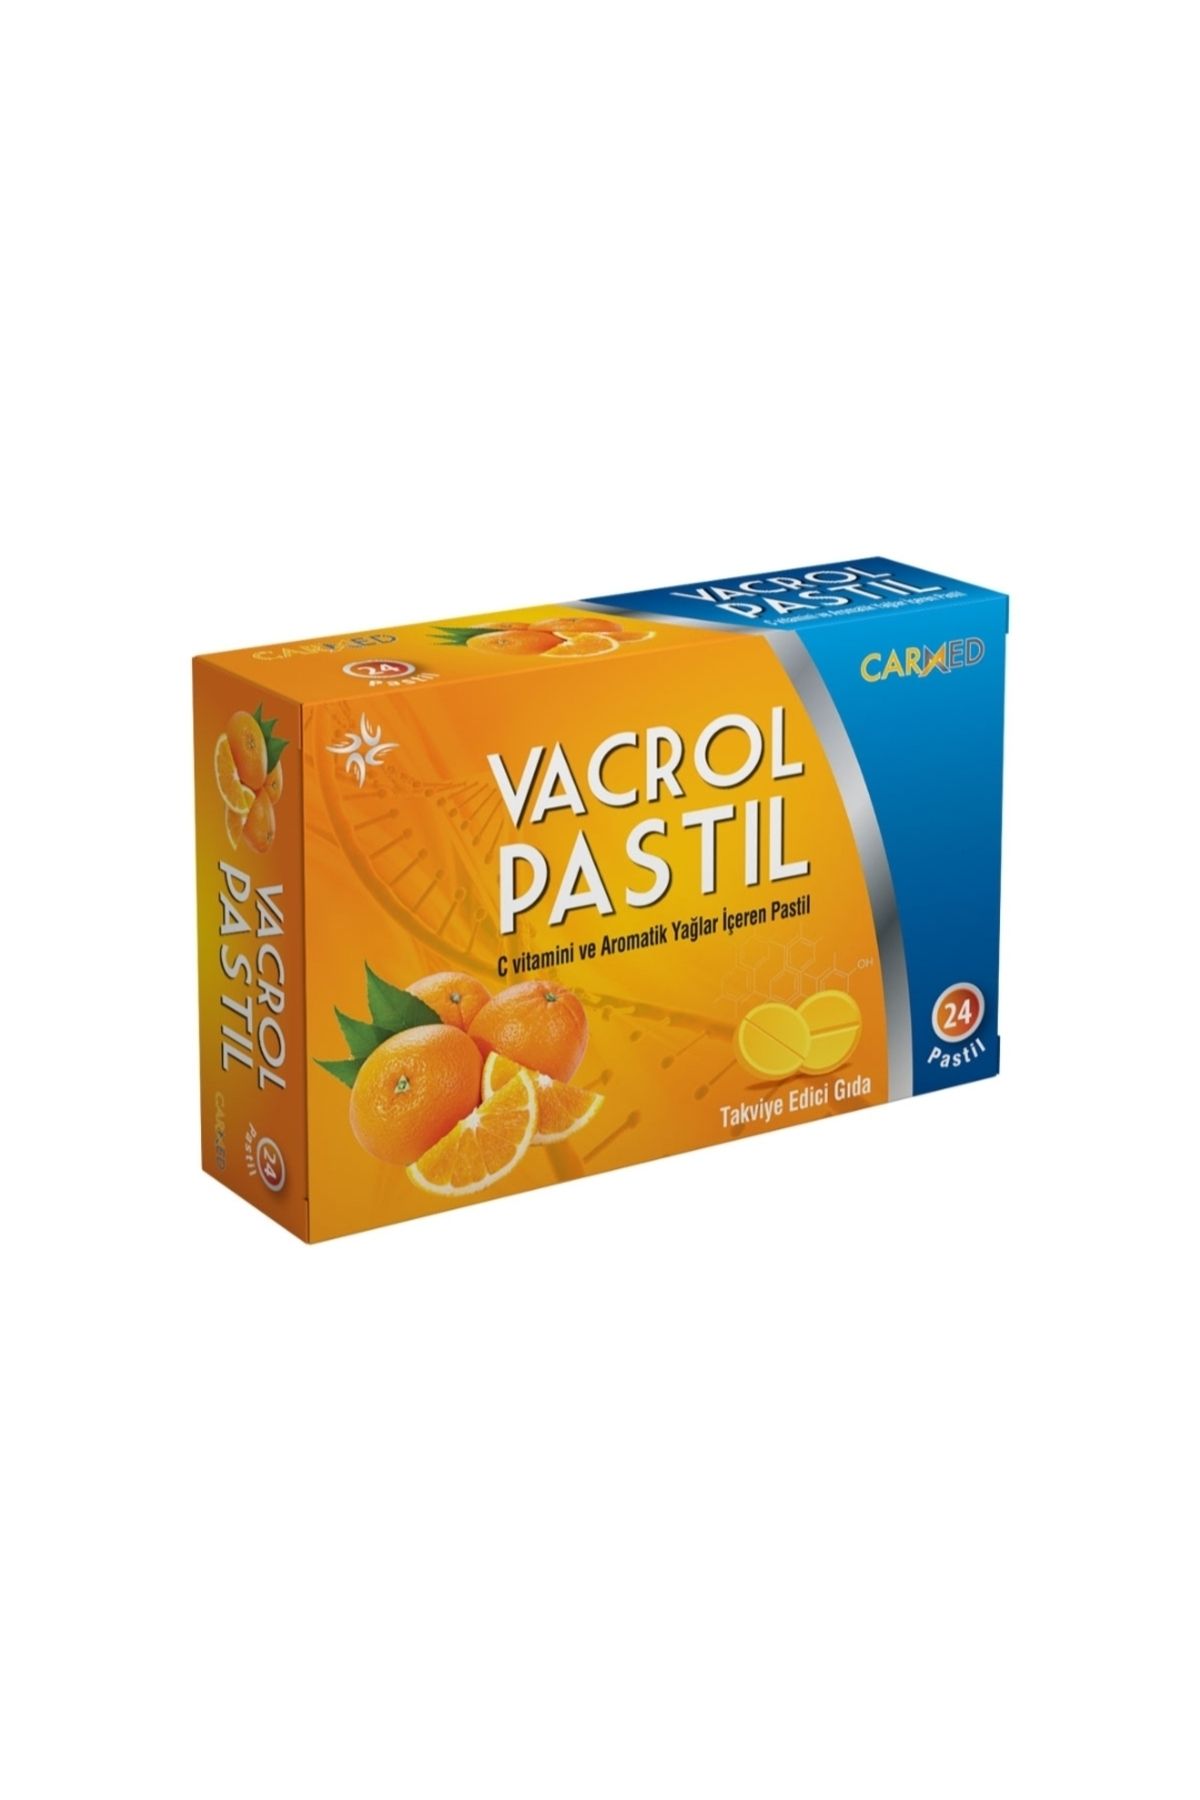 Vacrol C vitamini ve aromatik yağlar içeren VACROL PASTİL 24’lü kutu